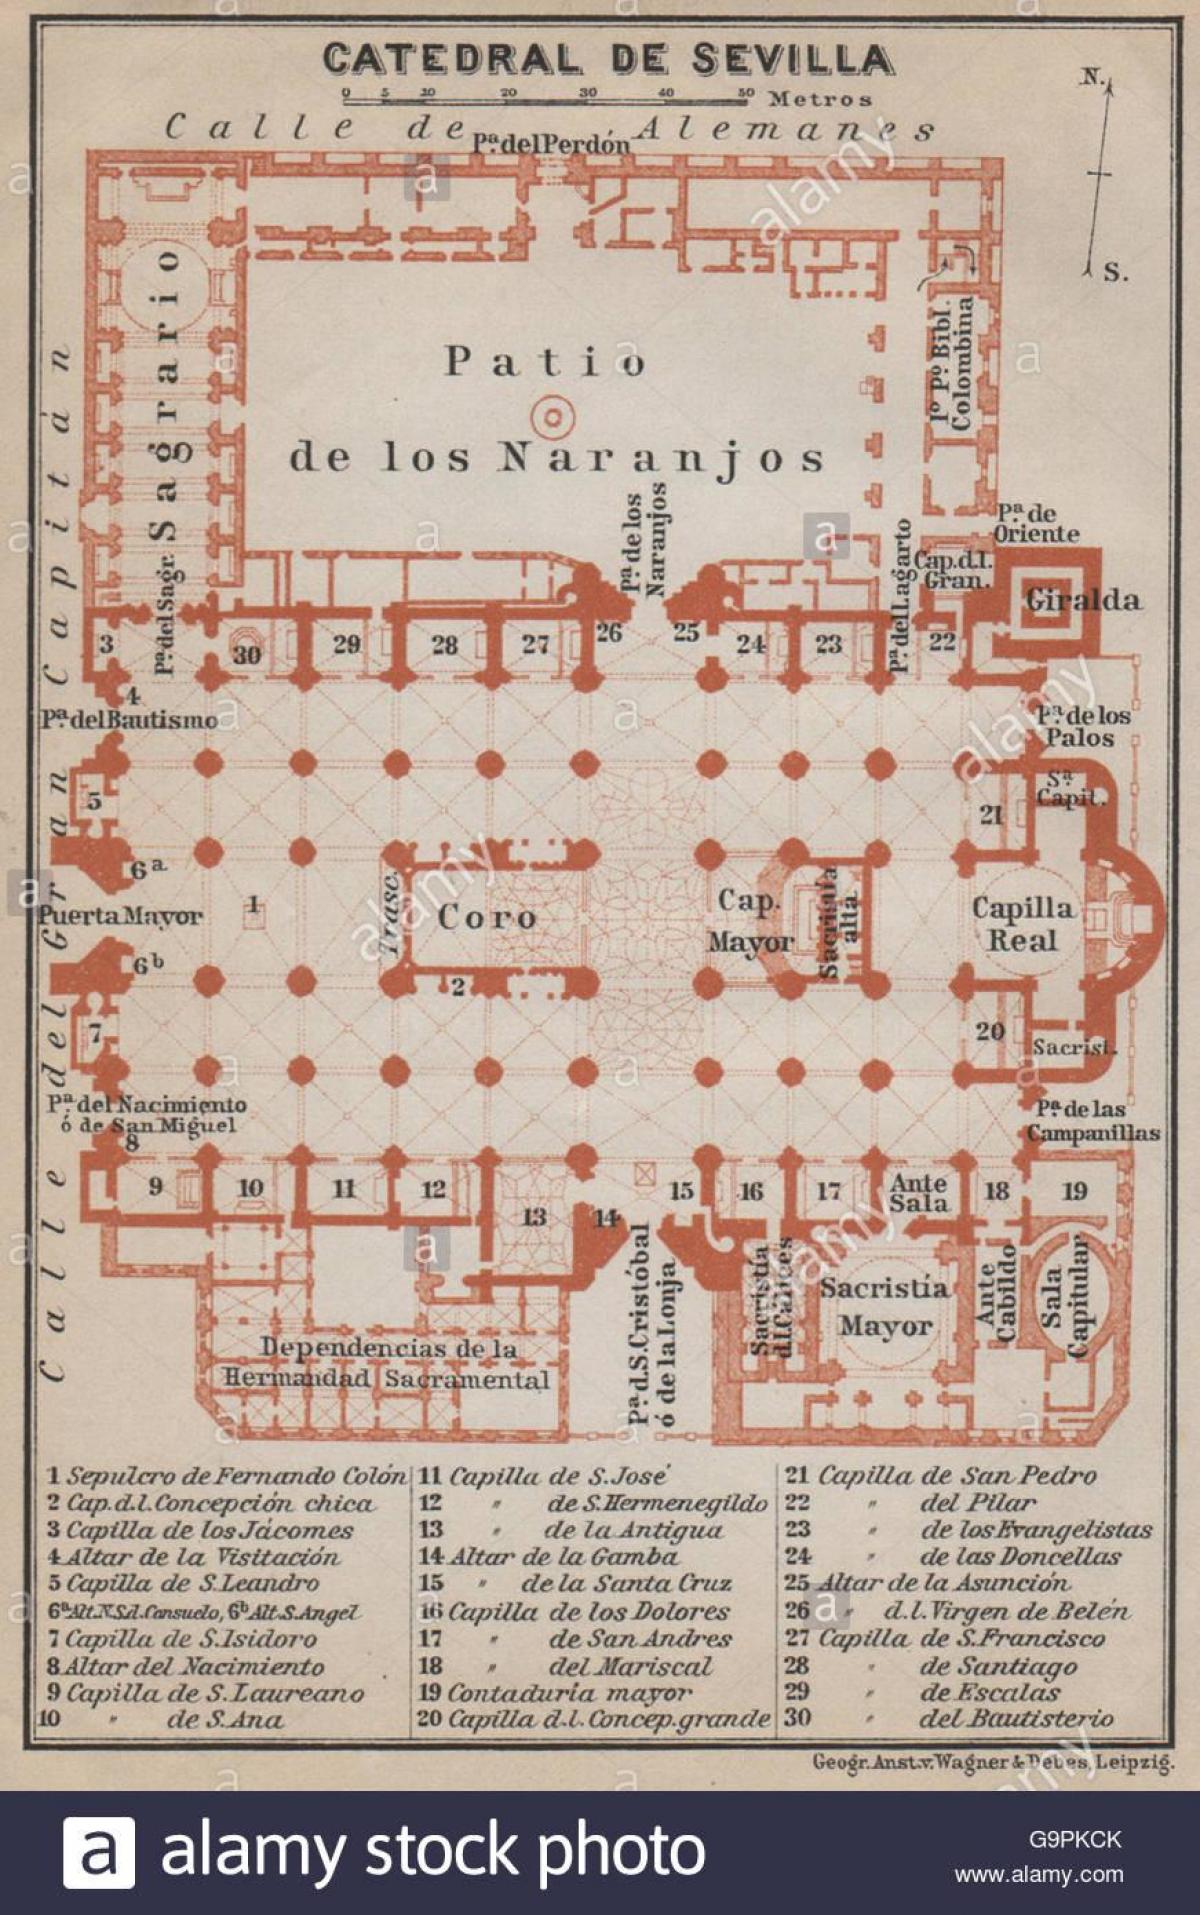 zemljevid Sevilli katedrala